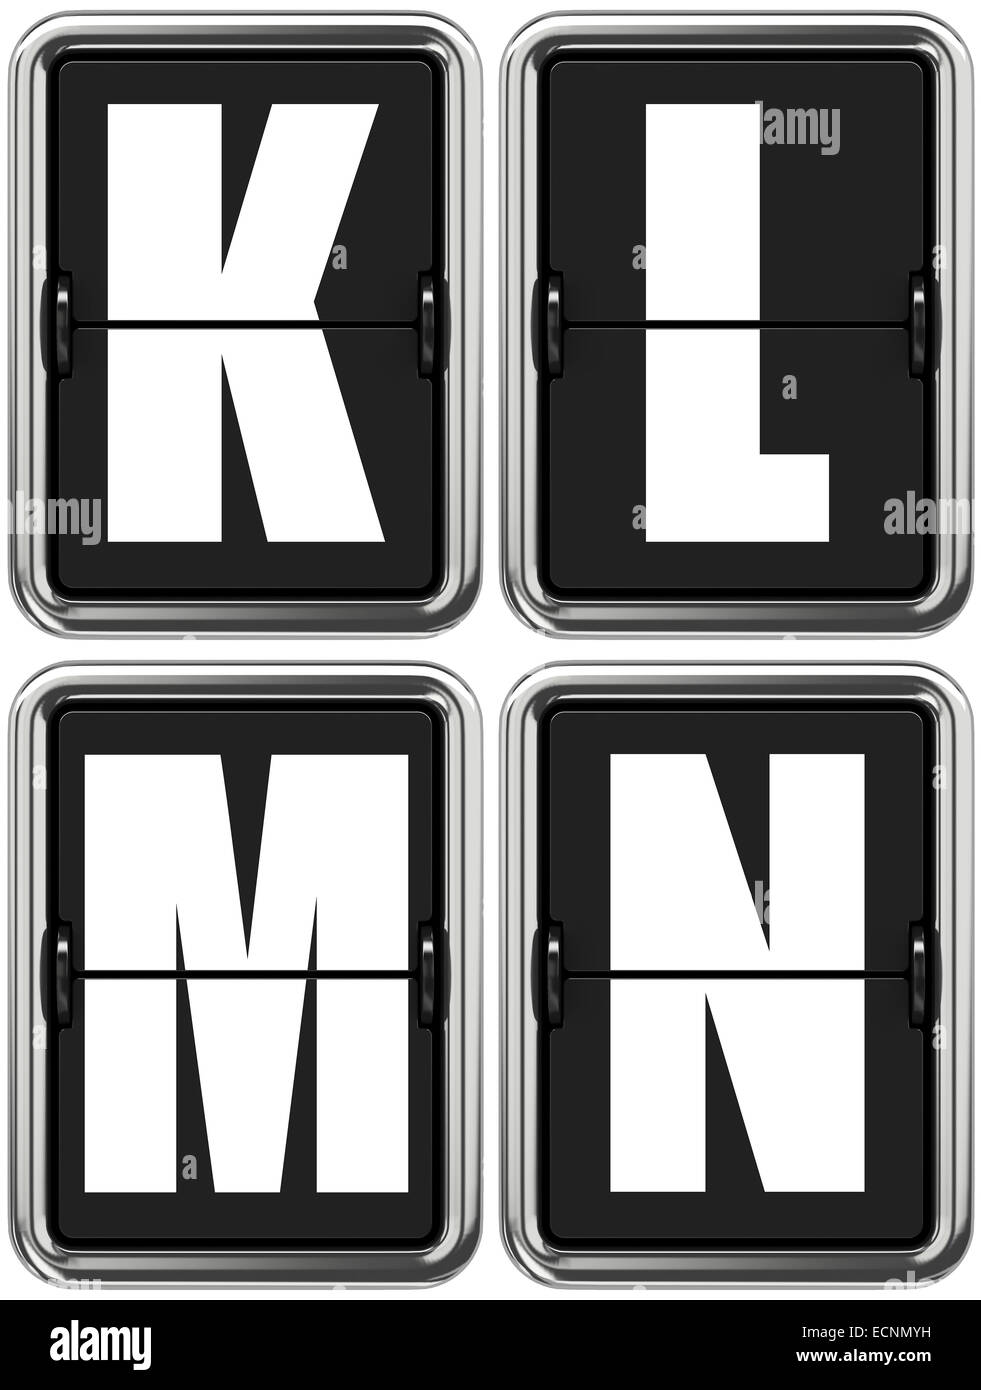 Letters K, L, M, N on Mechanical Scoreboard. Stock Photo